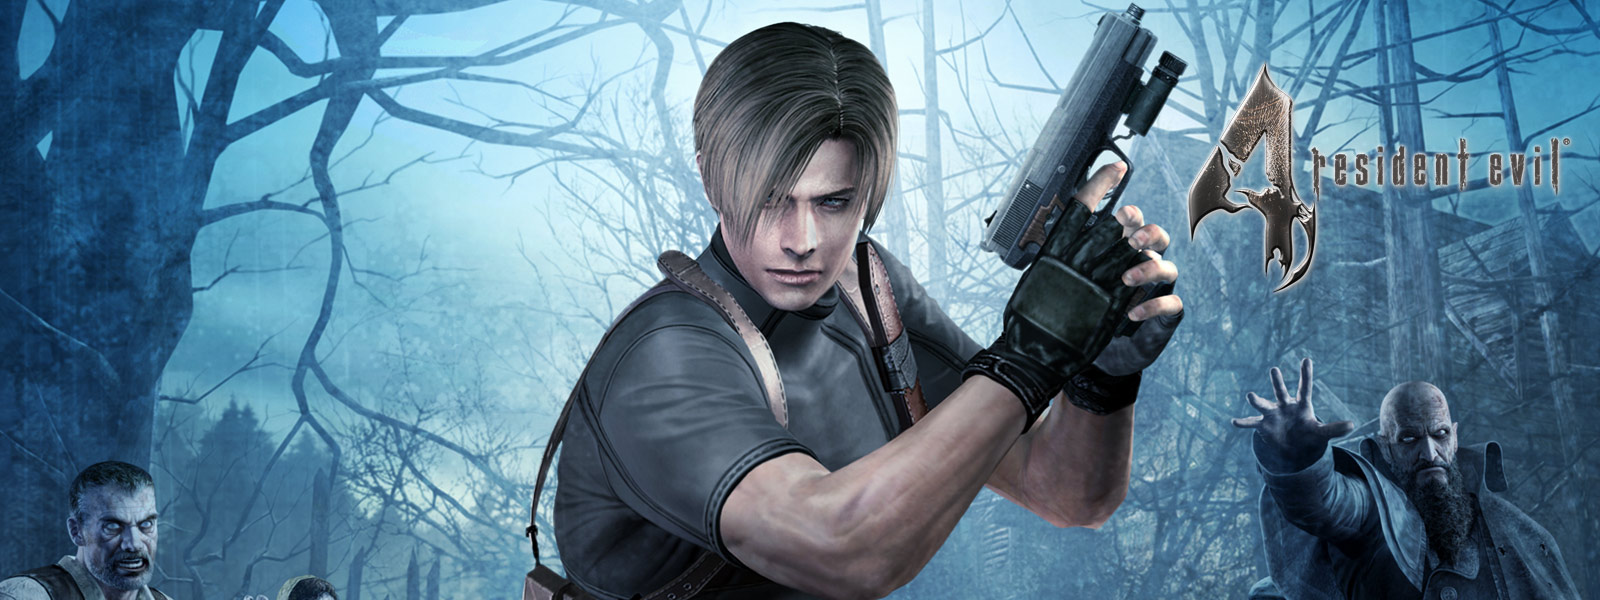 Resident Evil 4, egy karakter pisztolyt tart a kezében egy zombik által körülvett sötét erdőben